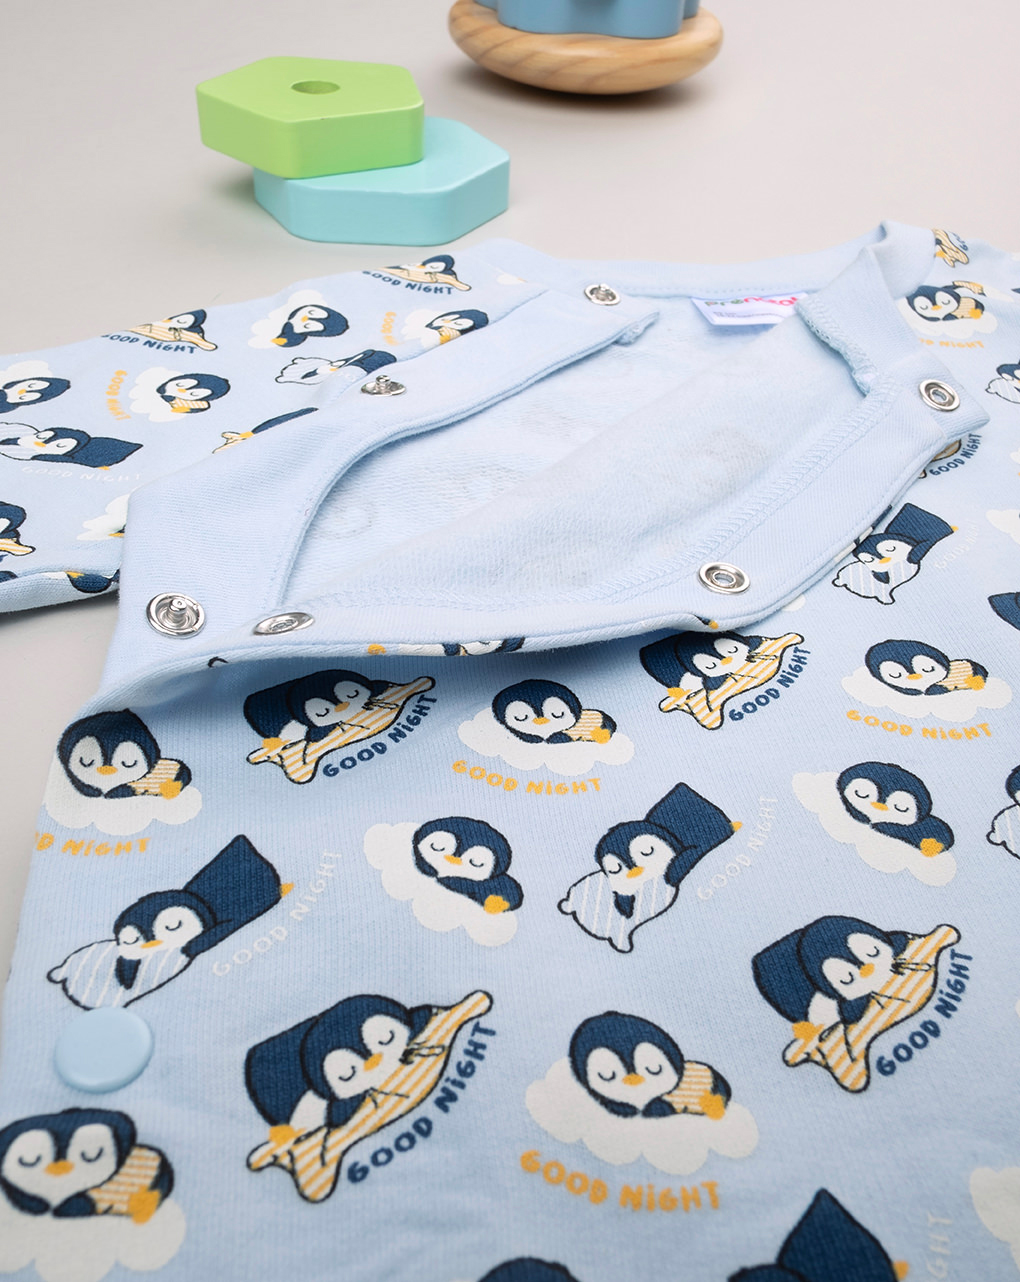 βρεφική ολόσωμη πιτζάμα γαλάζια με πιγκουίνους για αγόρι - Prénatal